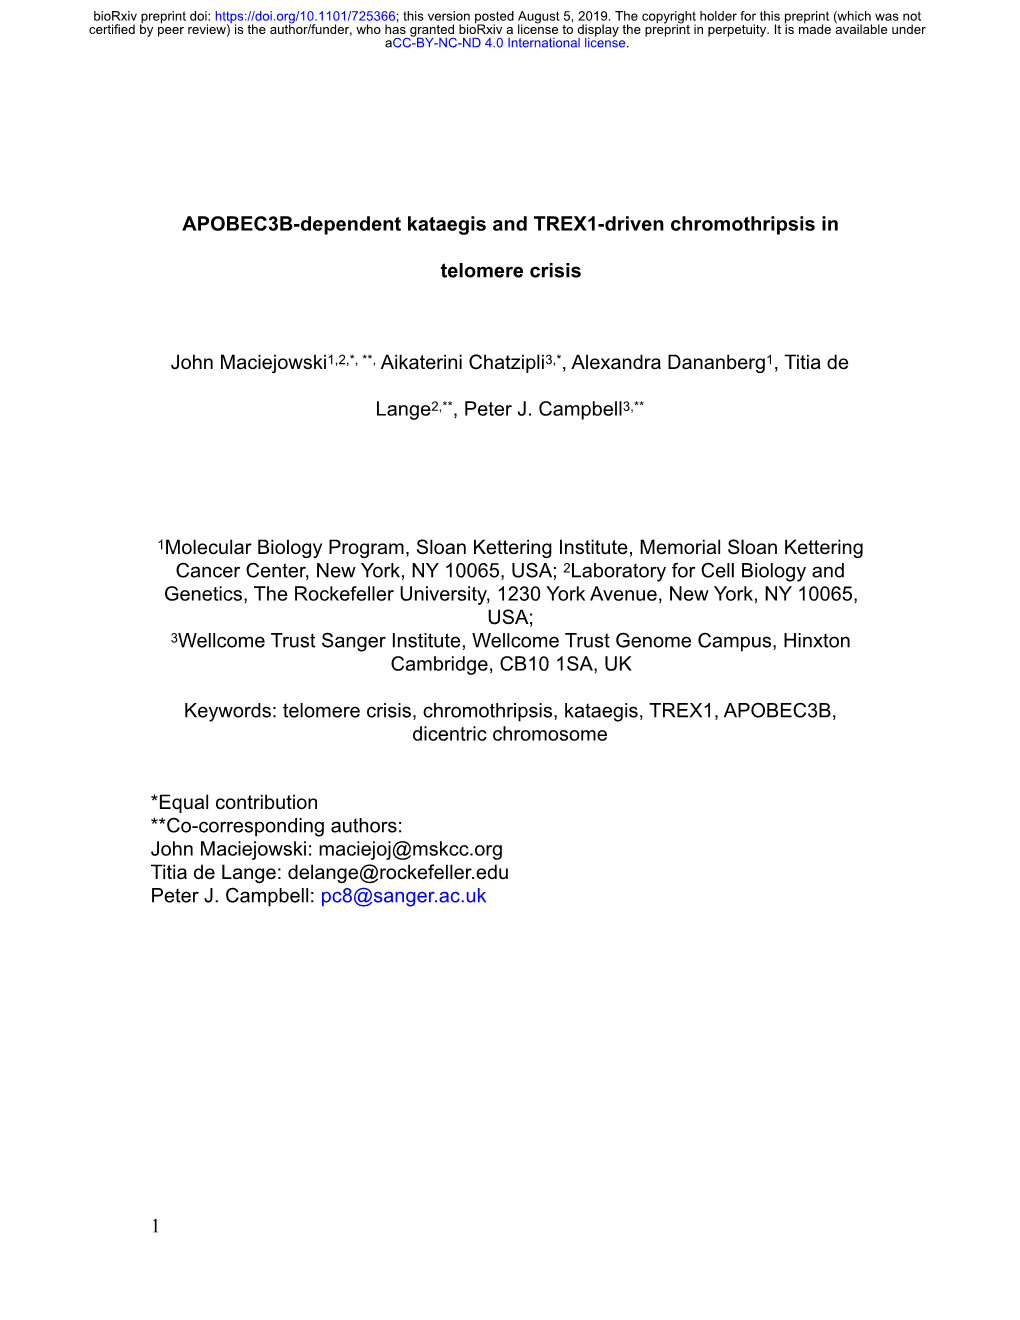 APOBEC3B-Dependent Kataegis and TREX1-Driven Chromothripsis In